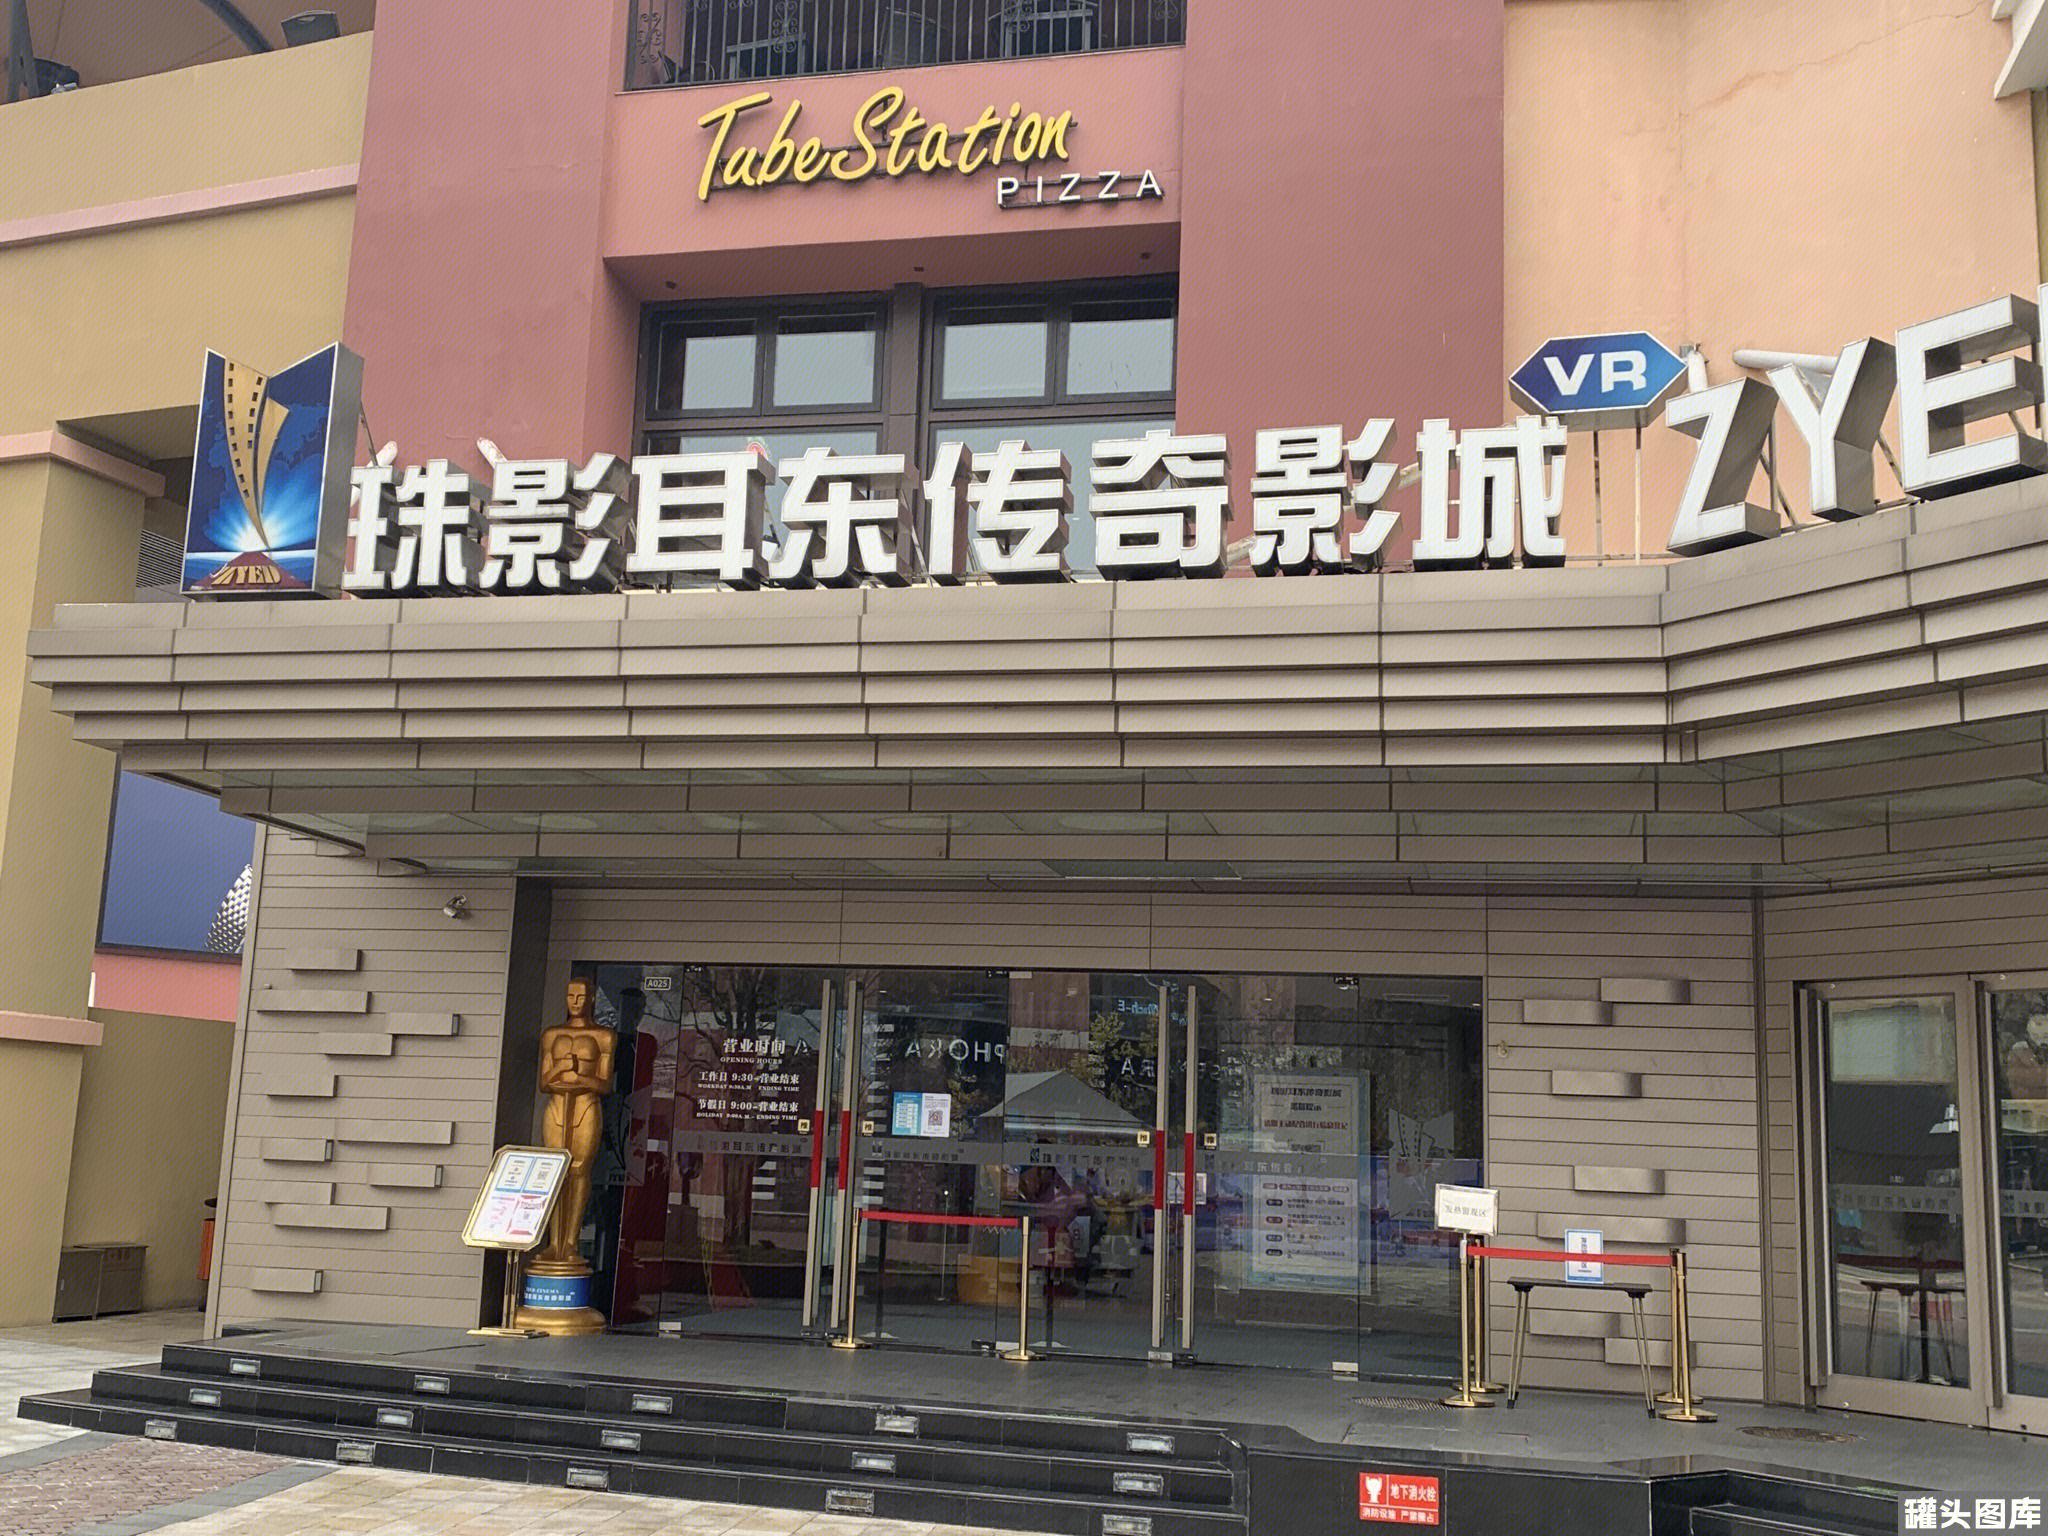 29号隆重开业 太平洋影城江津店 今天 太平洋 - 江津在线E47.CN